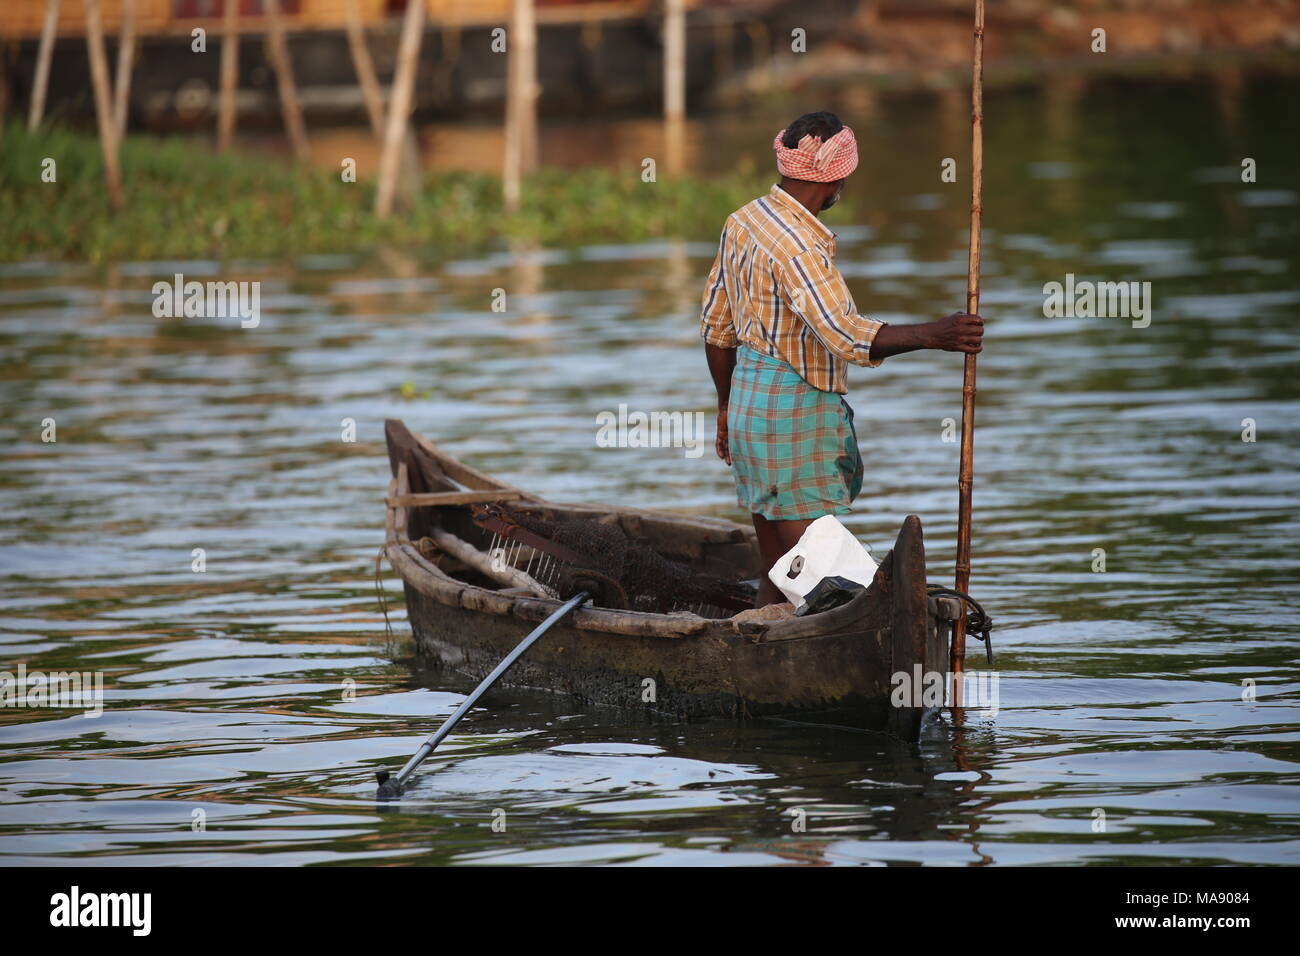 L'homme avec un petit bateau de pêche était au Kerala Backwaters - Alter Mann in einem Boot beim fischen au Kerala - Inde du Sud Banque D'Images